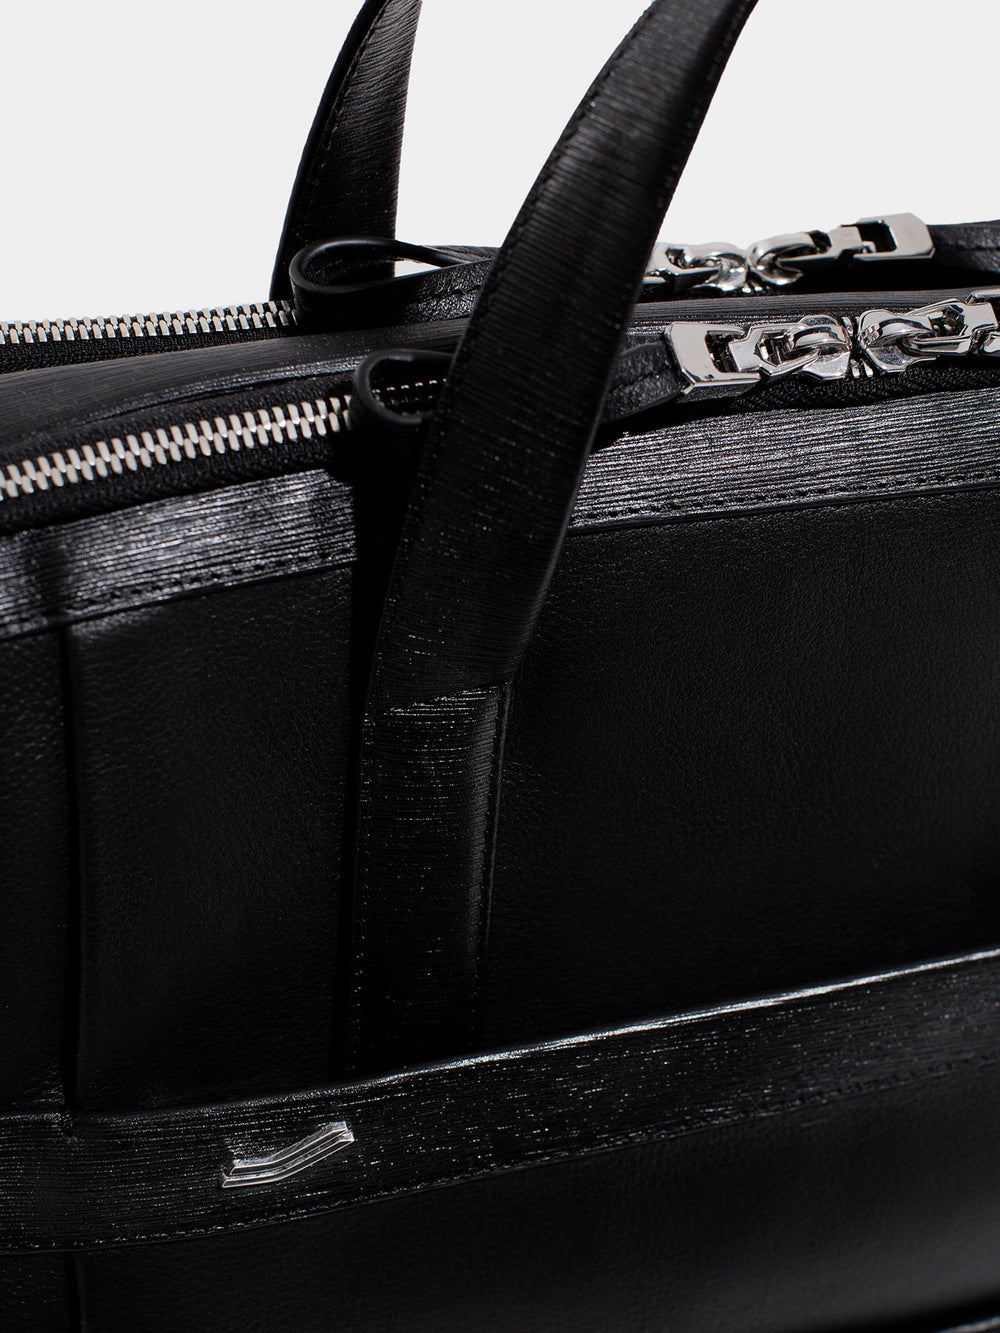 vocier large briefcase detail zipper black